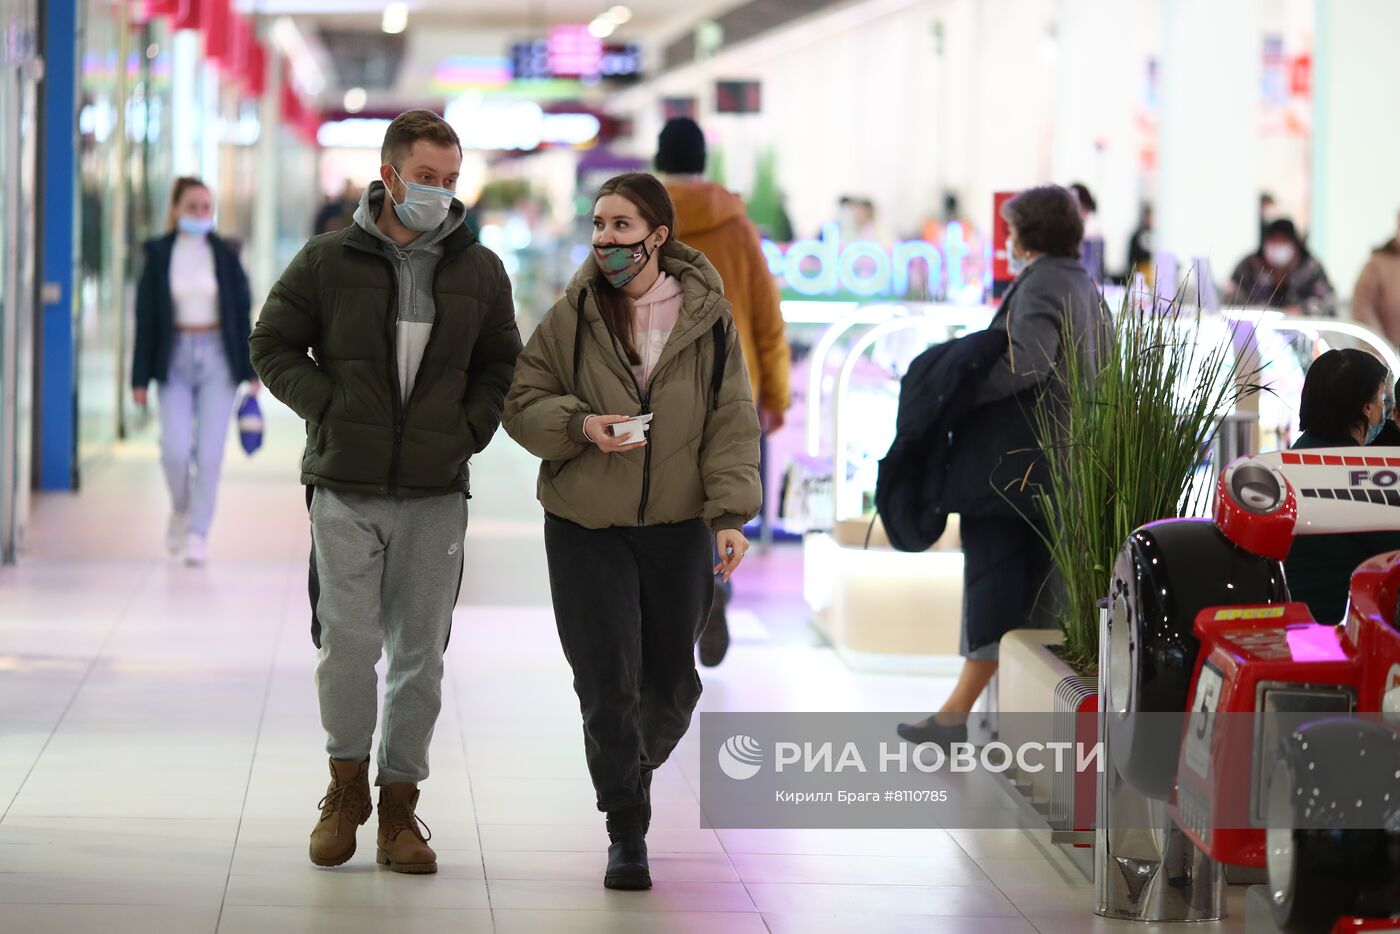 Соблюдение мер против COVID-19 в торговом центре "Акварель" в Волгограде